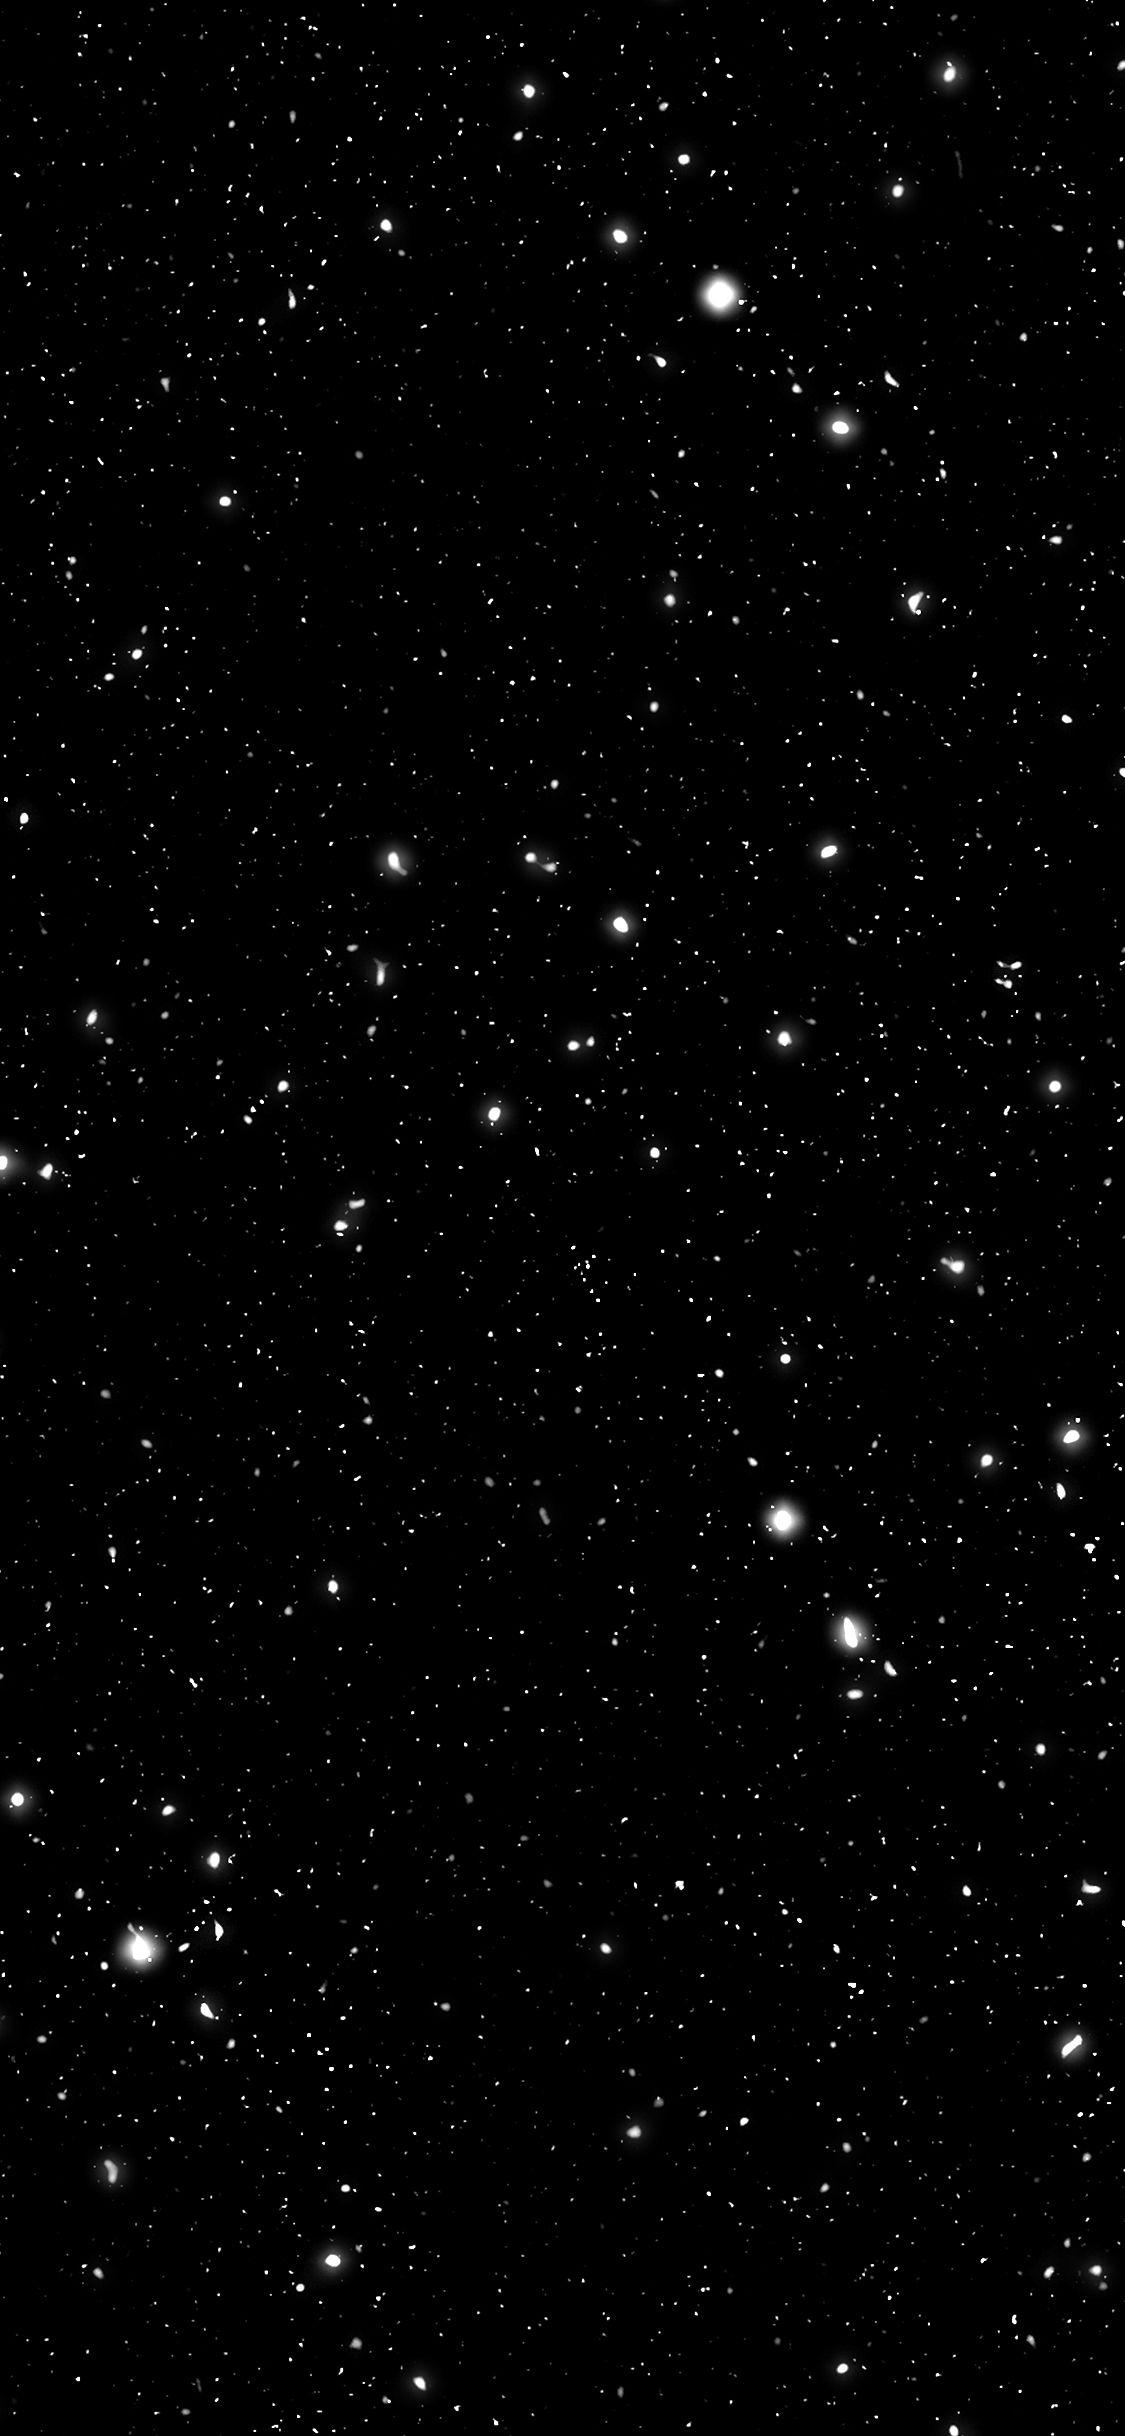 Tận hưởng sự bất tận của vũ trụ với hình nền galaxy đen đầy bí ẩn. Hình ảnh đen sâu và ánh sáng từ những vì sao sẽ đưa bạn vào không gian rộng lớn và đầy thú vị.